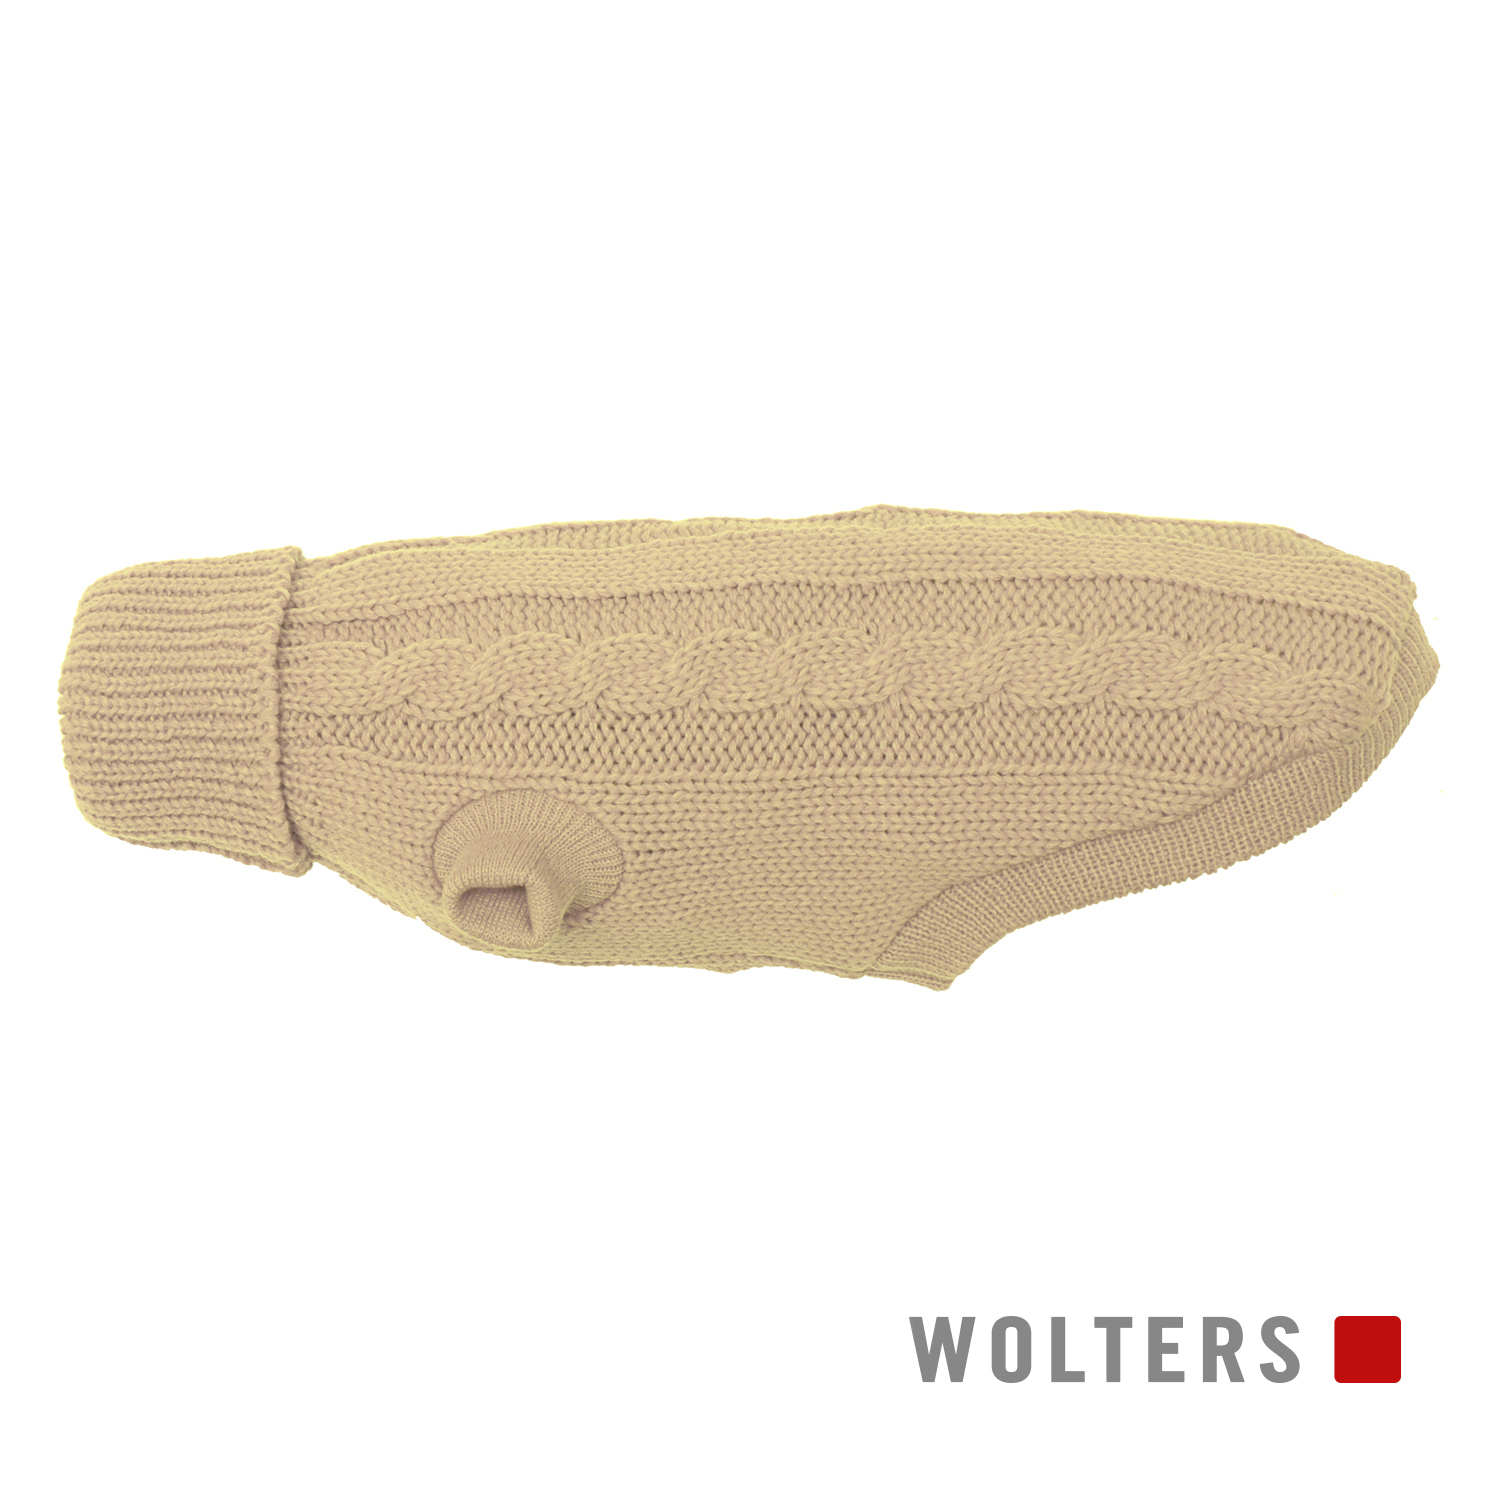 Wolters Zopf-Strickpullover Beige 40 cm